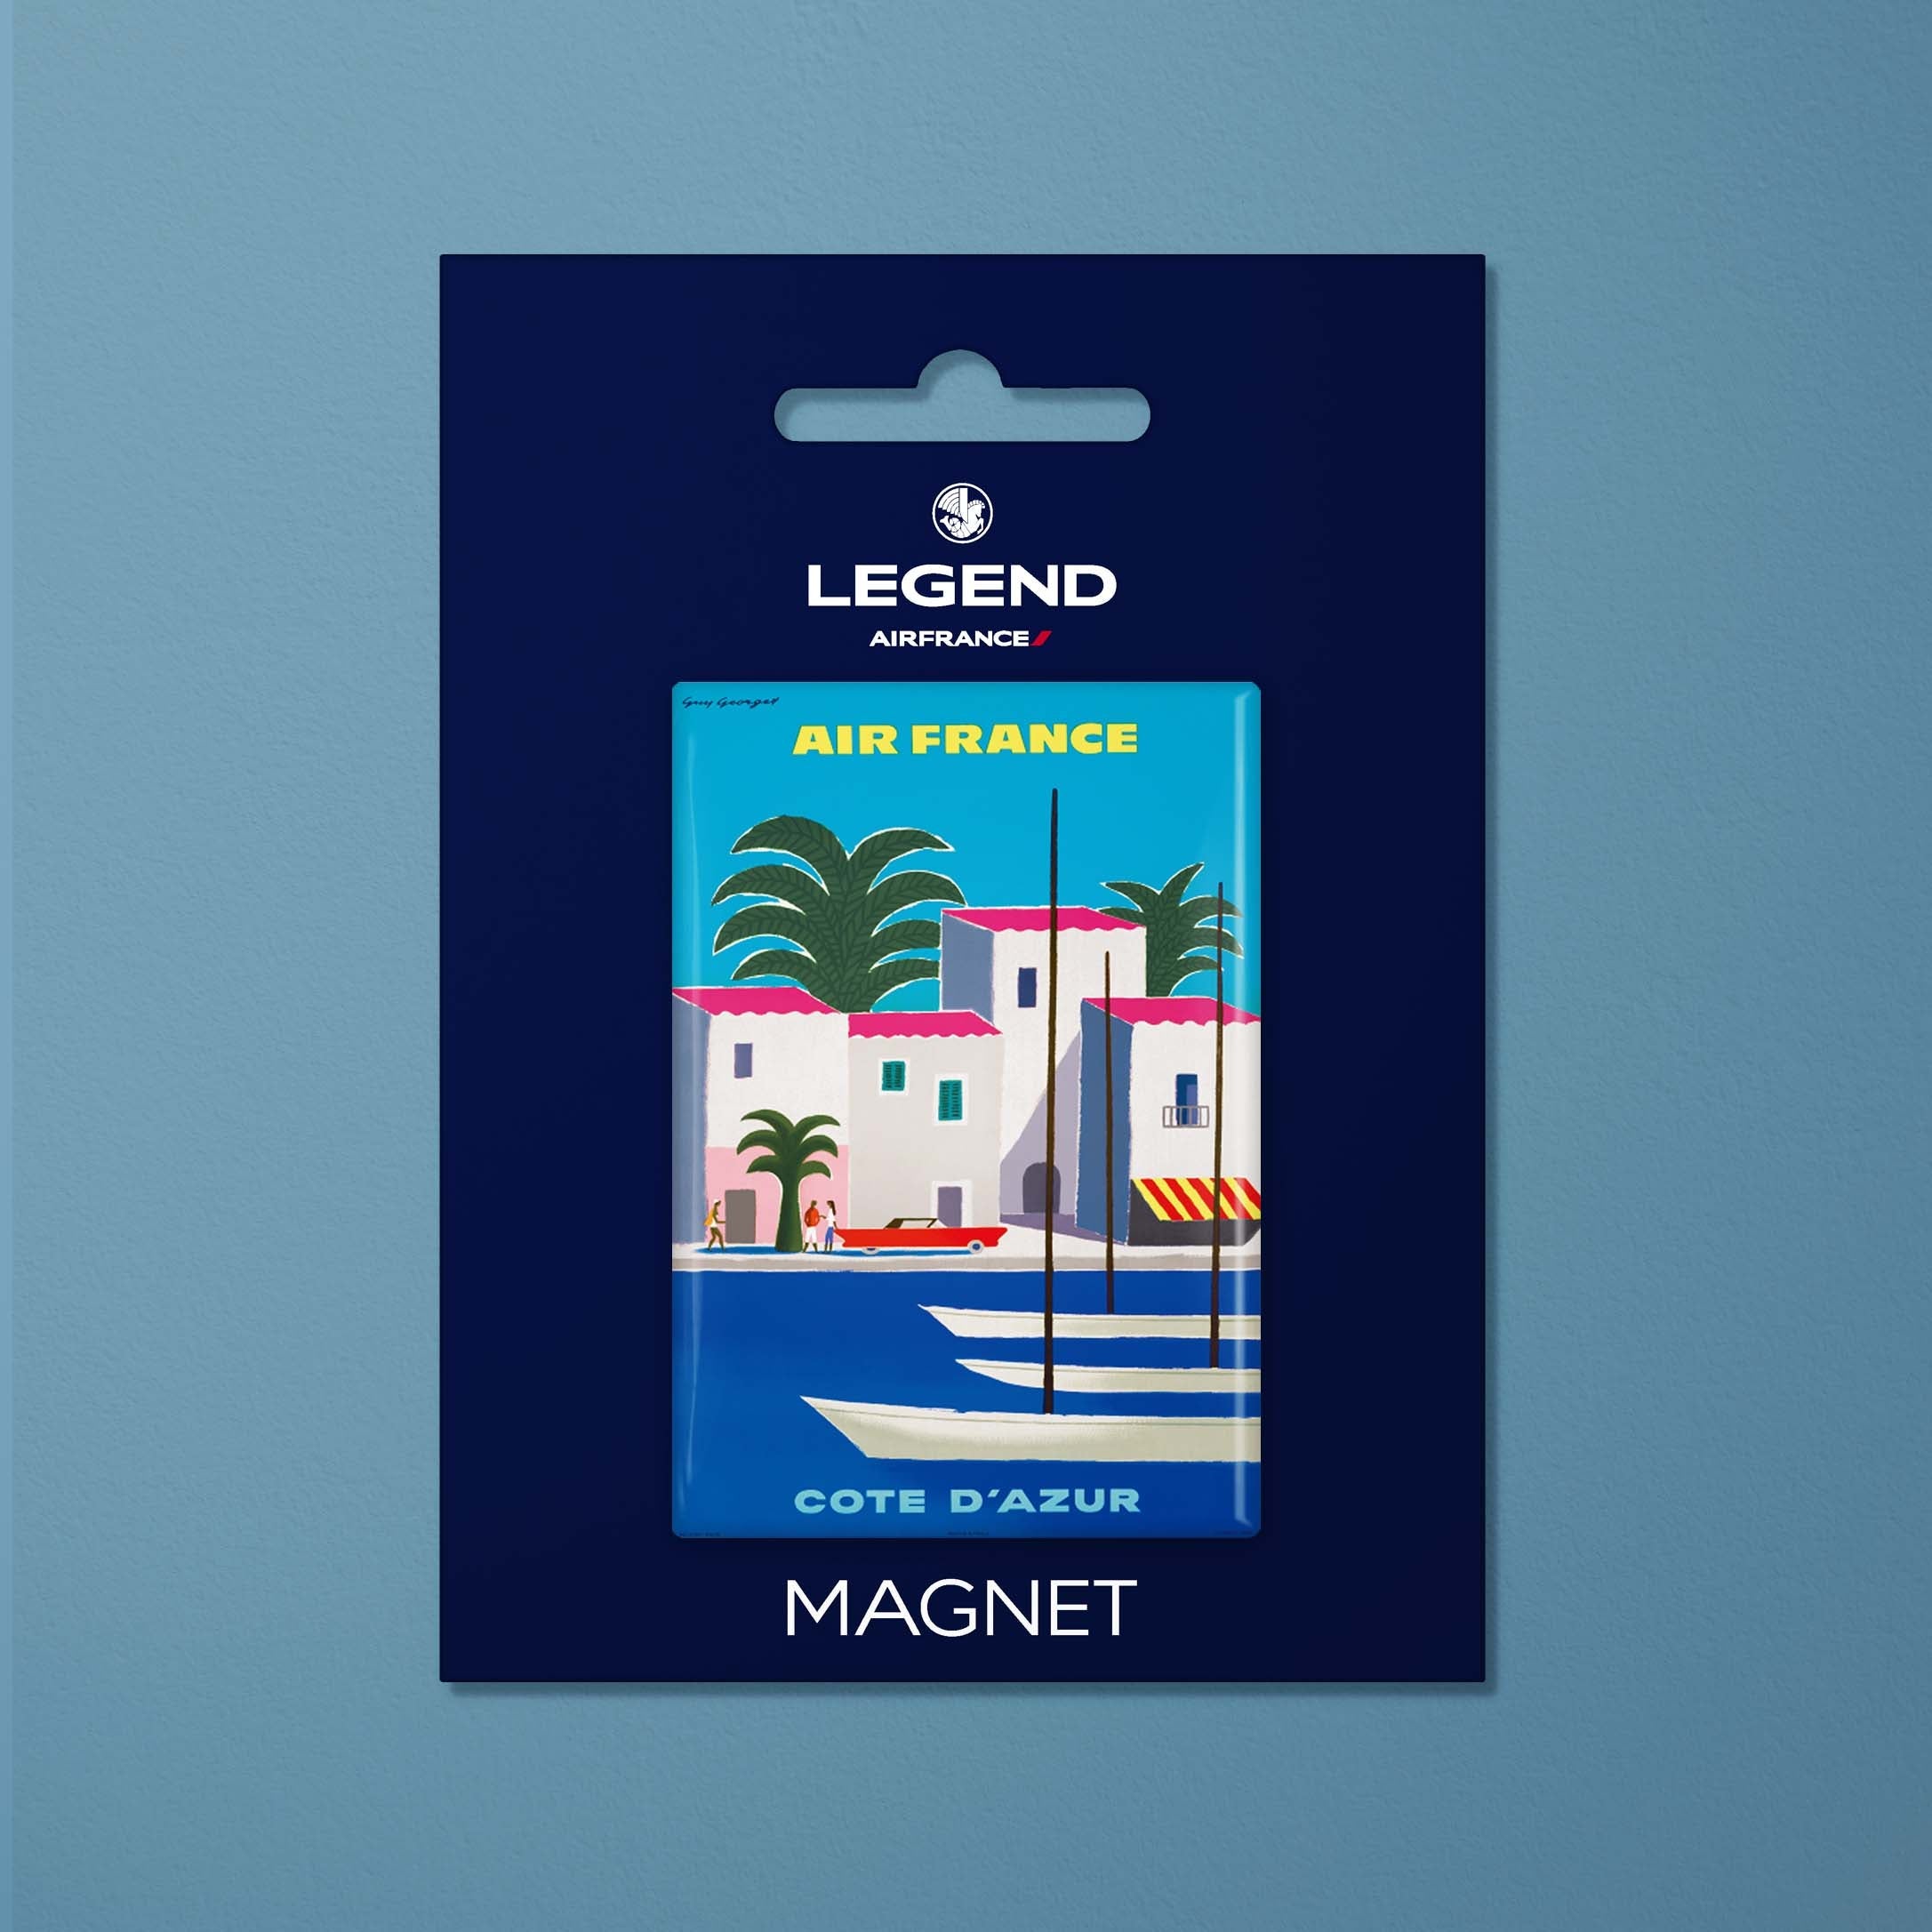 Magnet Air France Legend Côte d'Azur, port